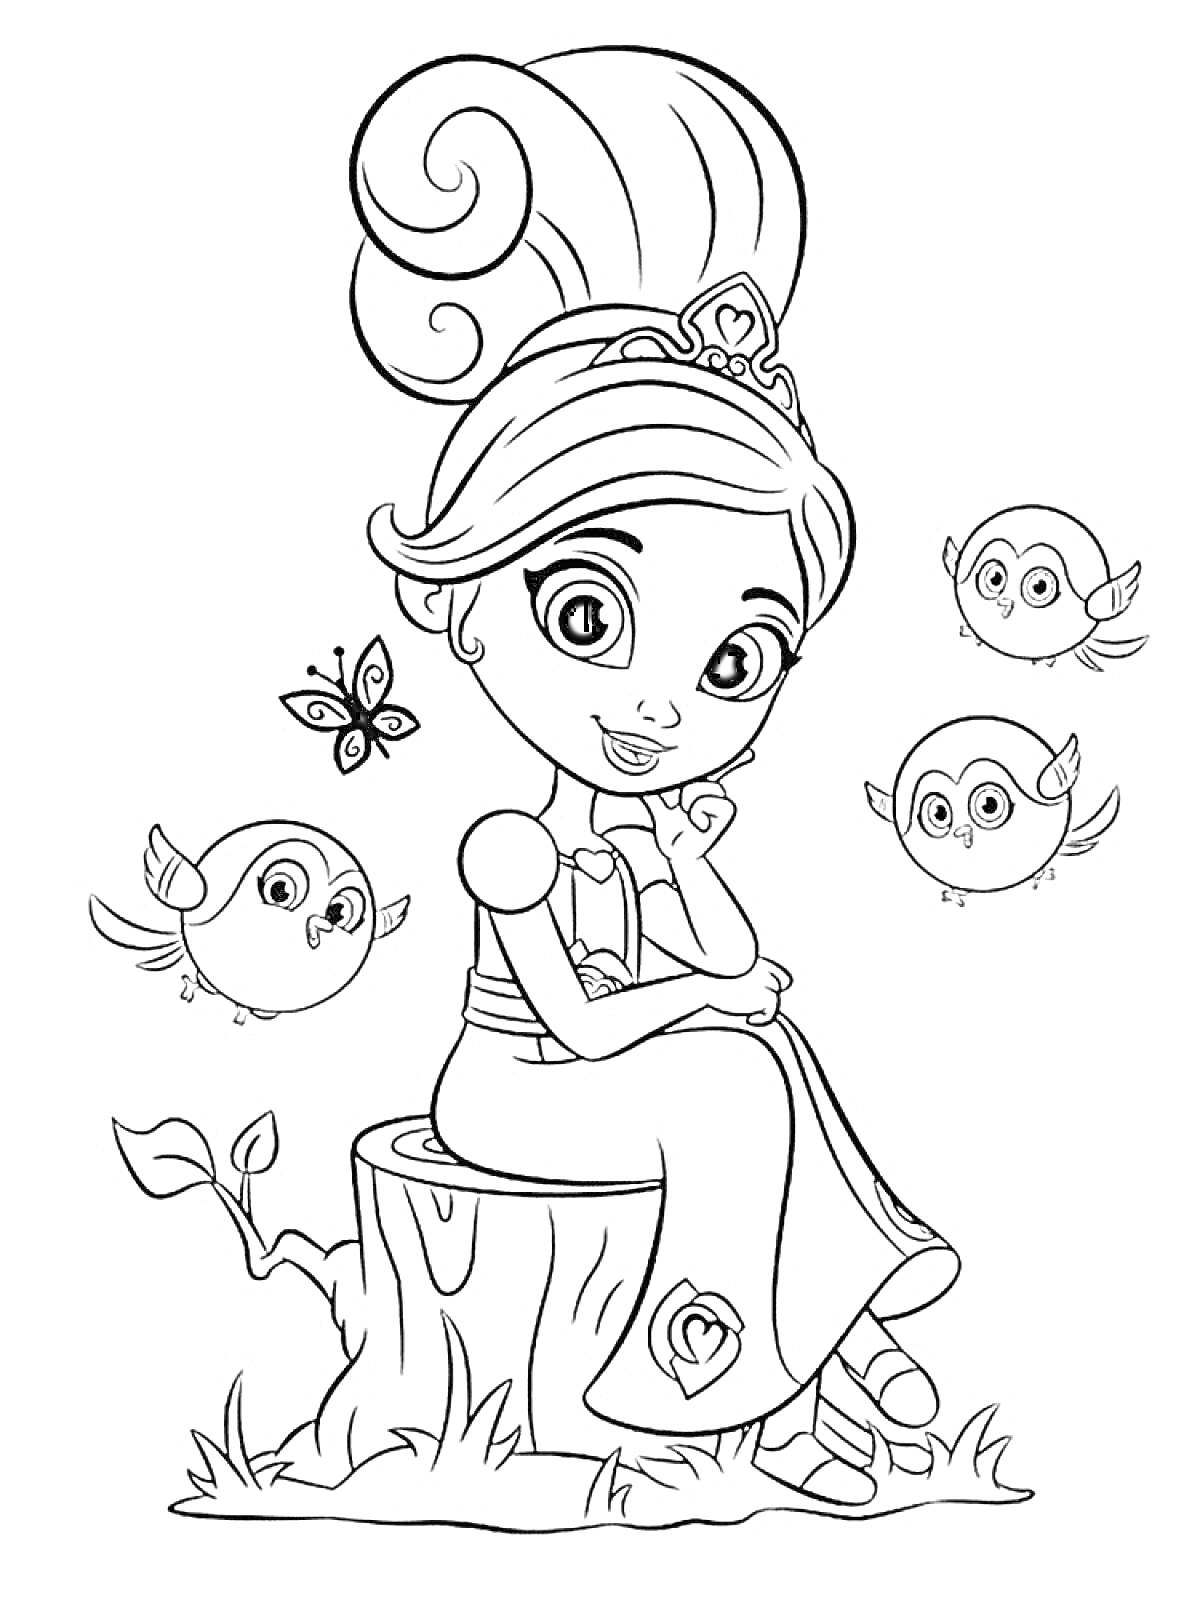 Нелла принцесса рыцарь, сидящая на пеньке, с тремя совятами и бабочкой